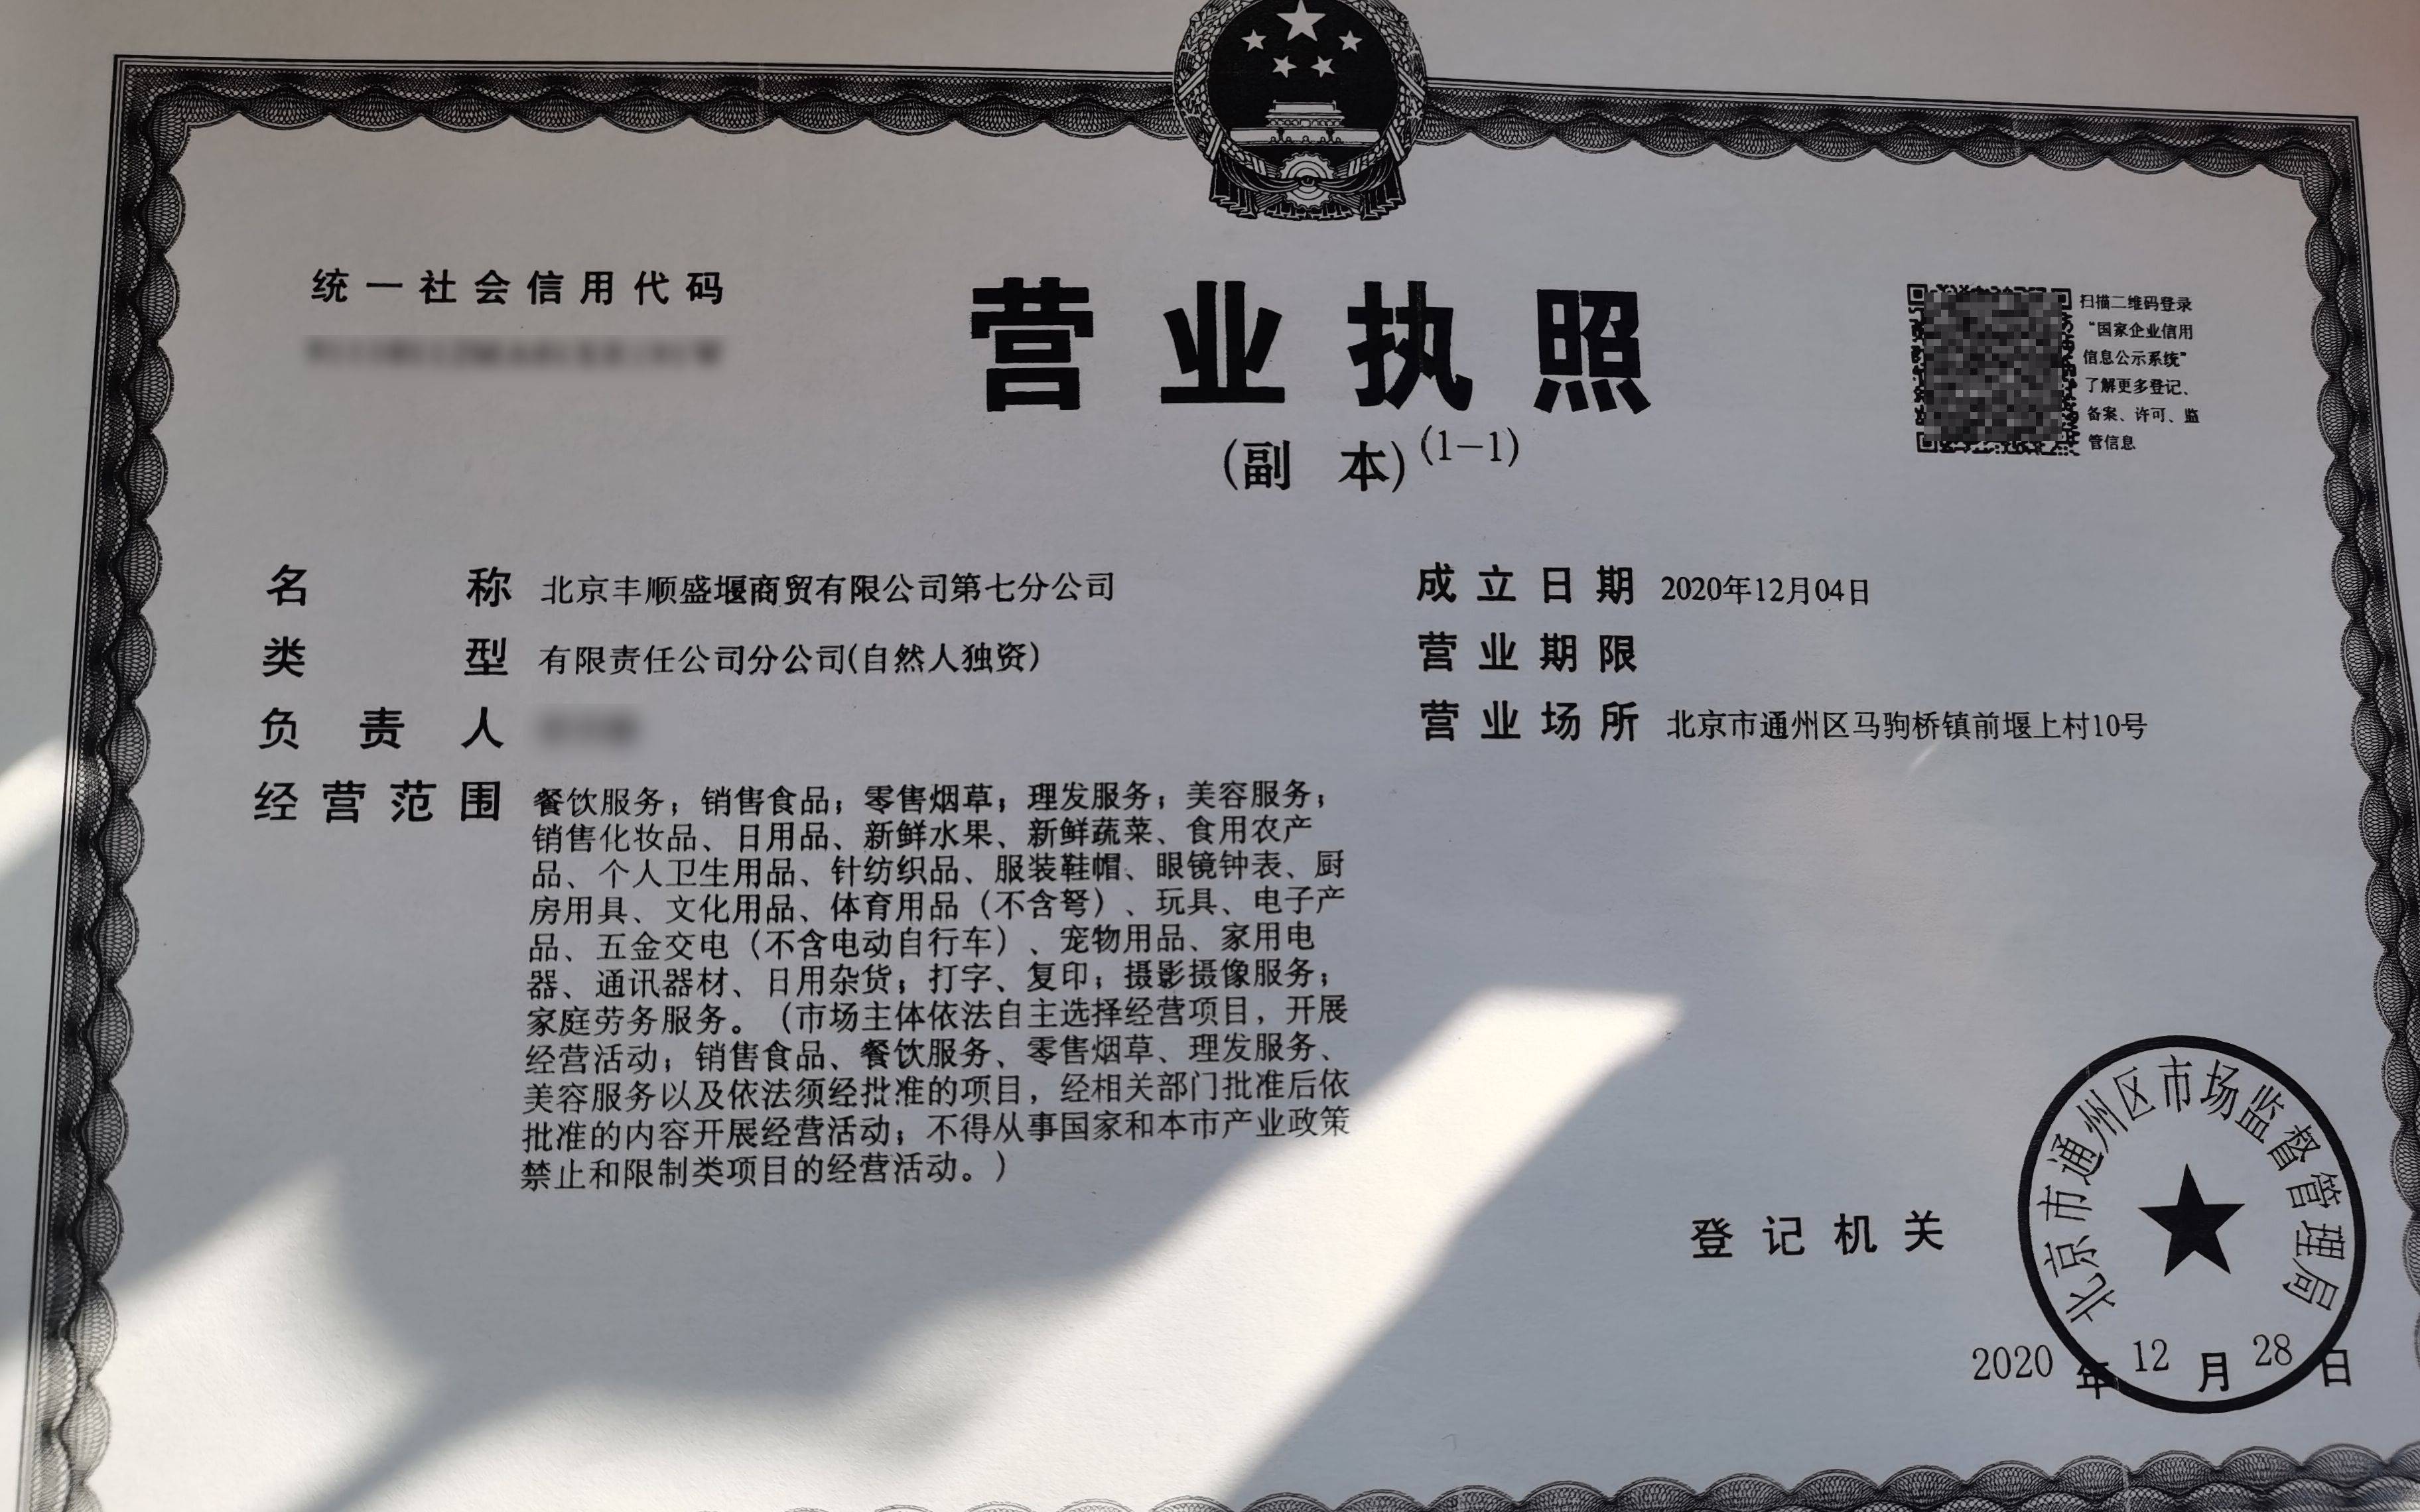 通州马驹桥镇启动村级营业执照登记 700余户村民领"大